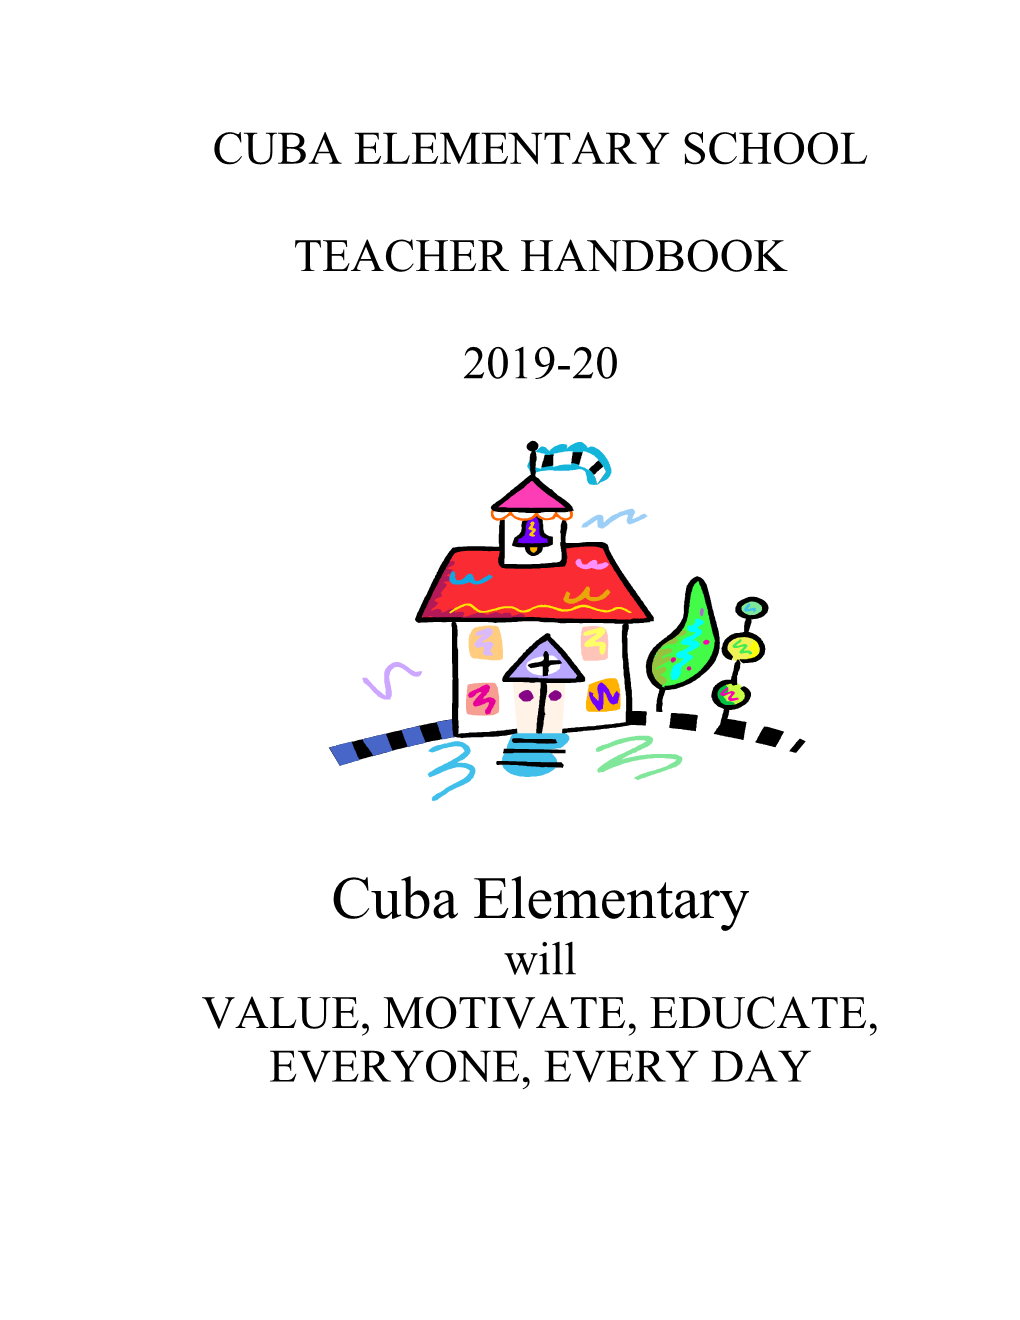 Cuba Elementary School Teacher Handbook 2019-20